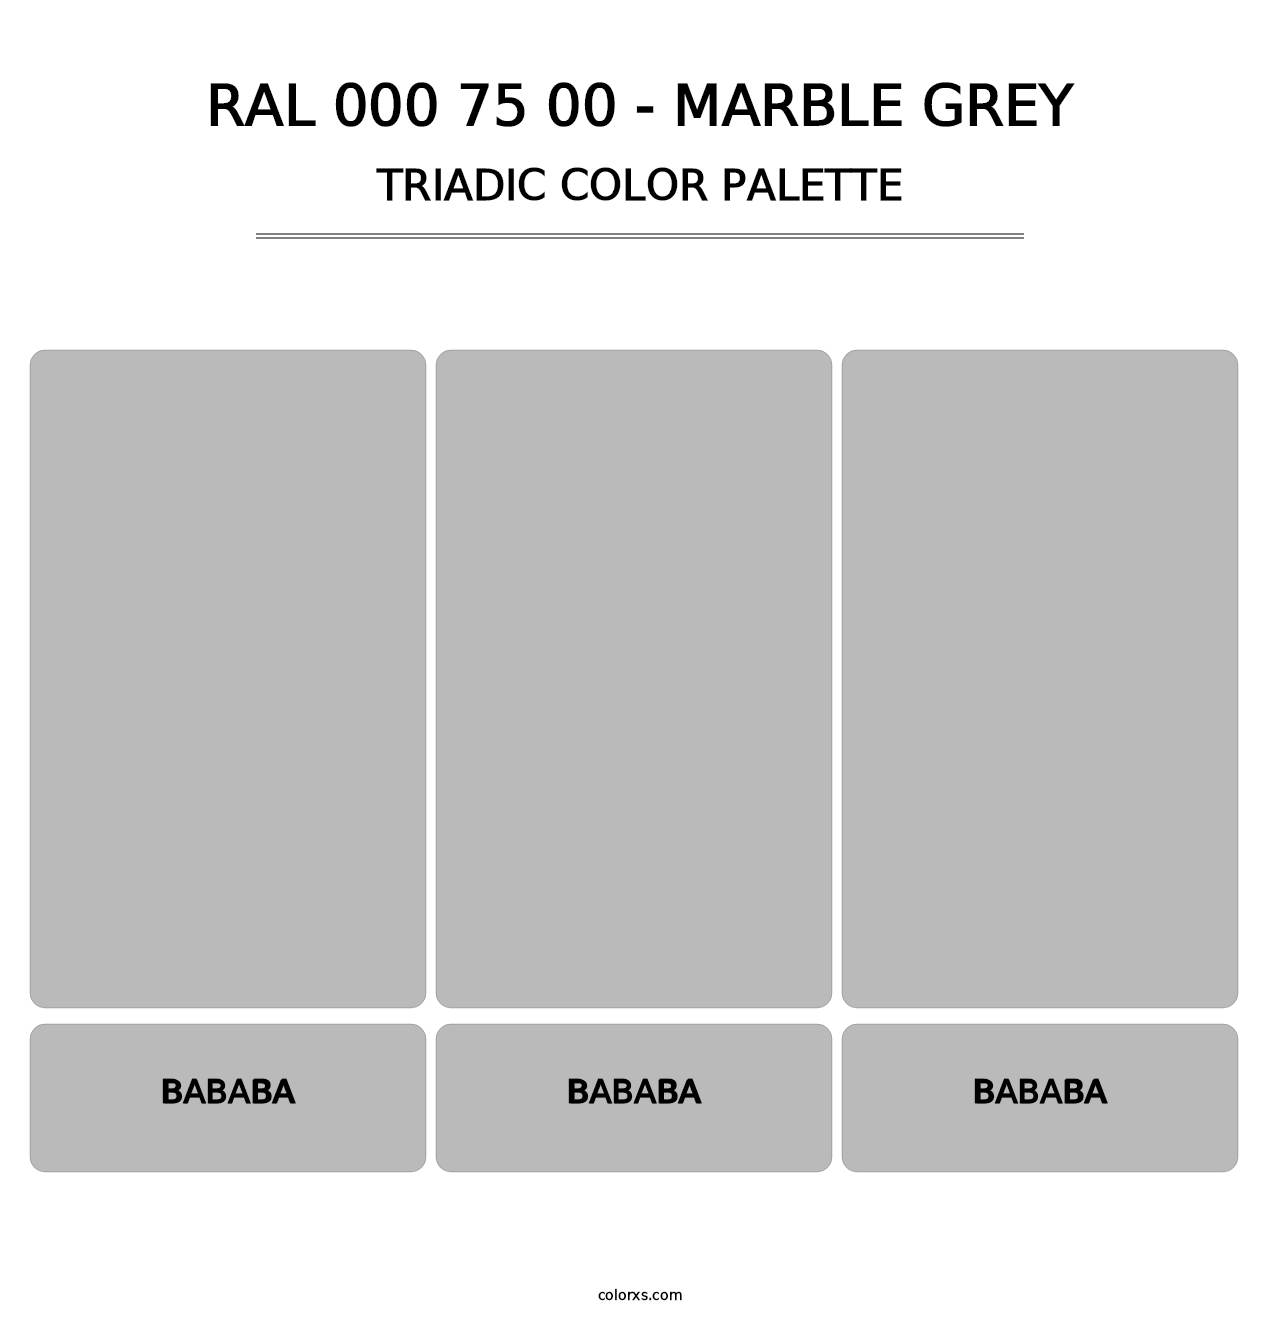 RAL 000 75 00 - Marble Grey - Triadic Color Palette